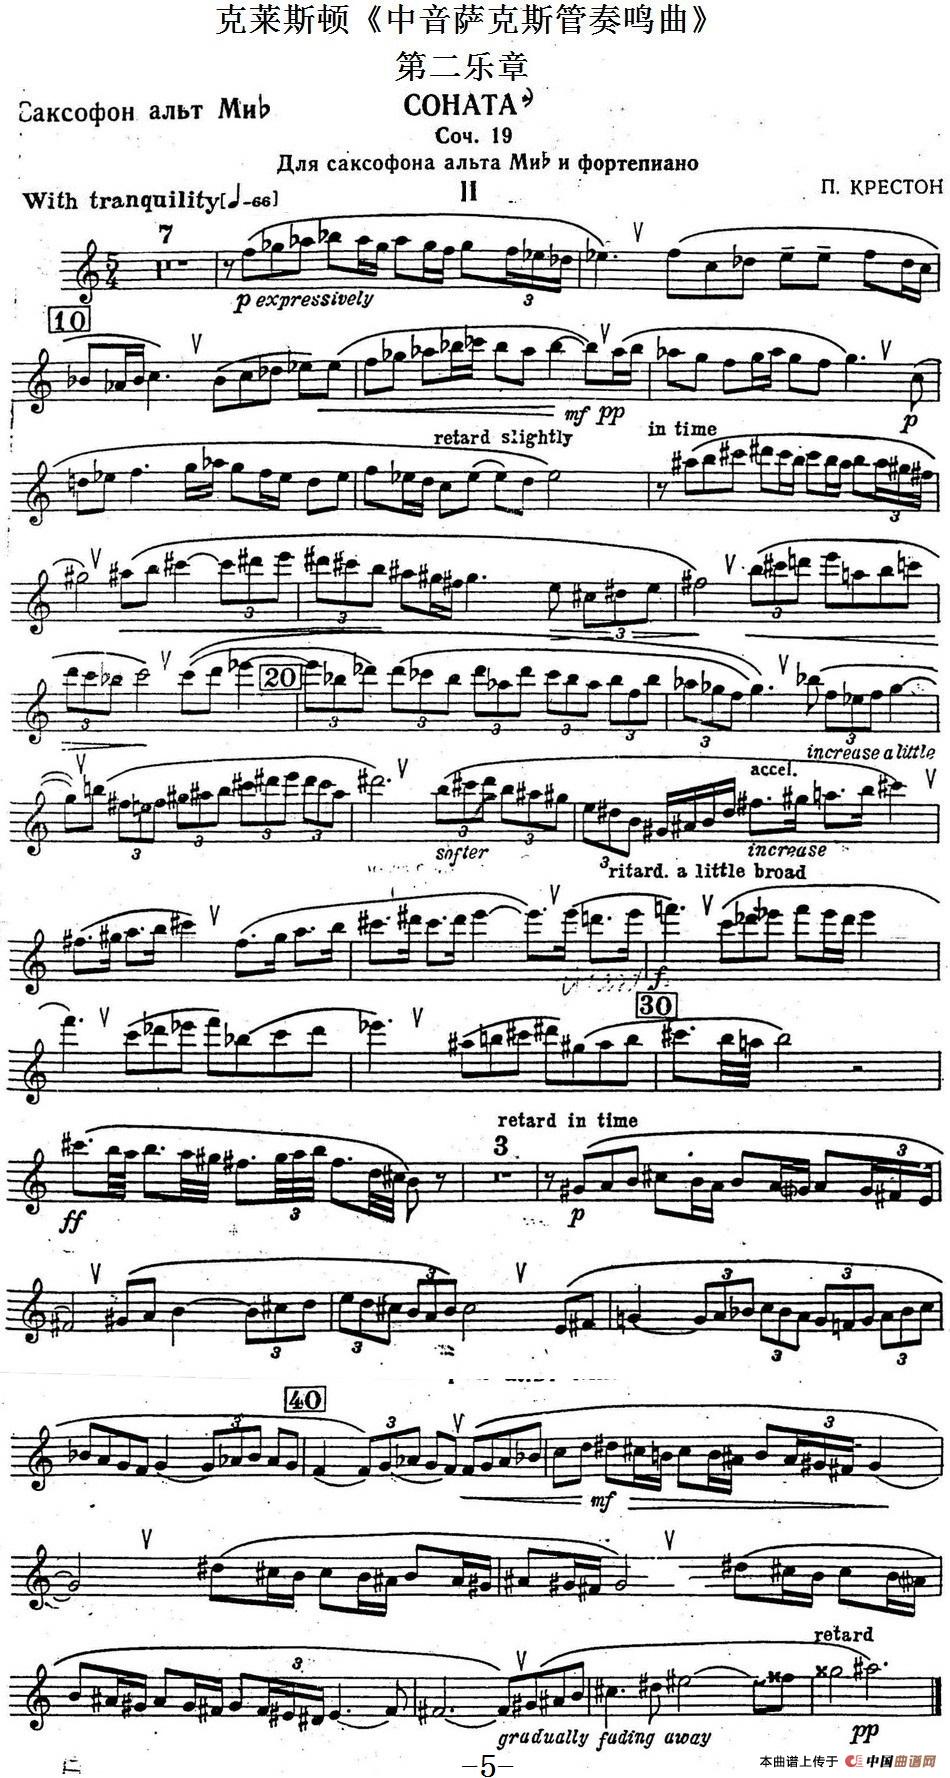 克莱斯顿《中音萨克斯管奏鸣曲》第二乐章